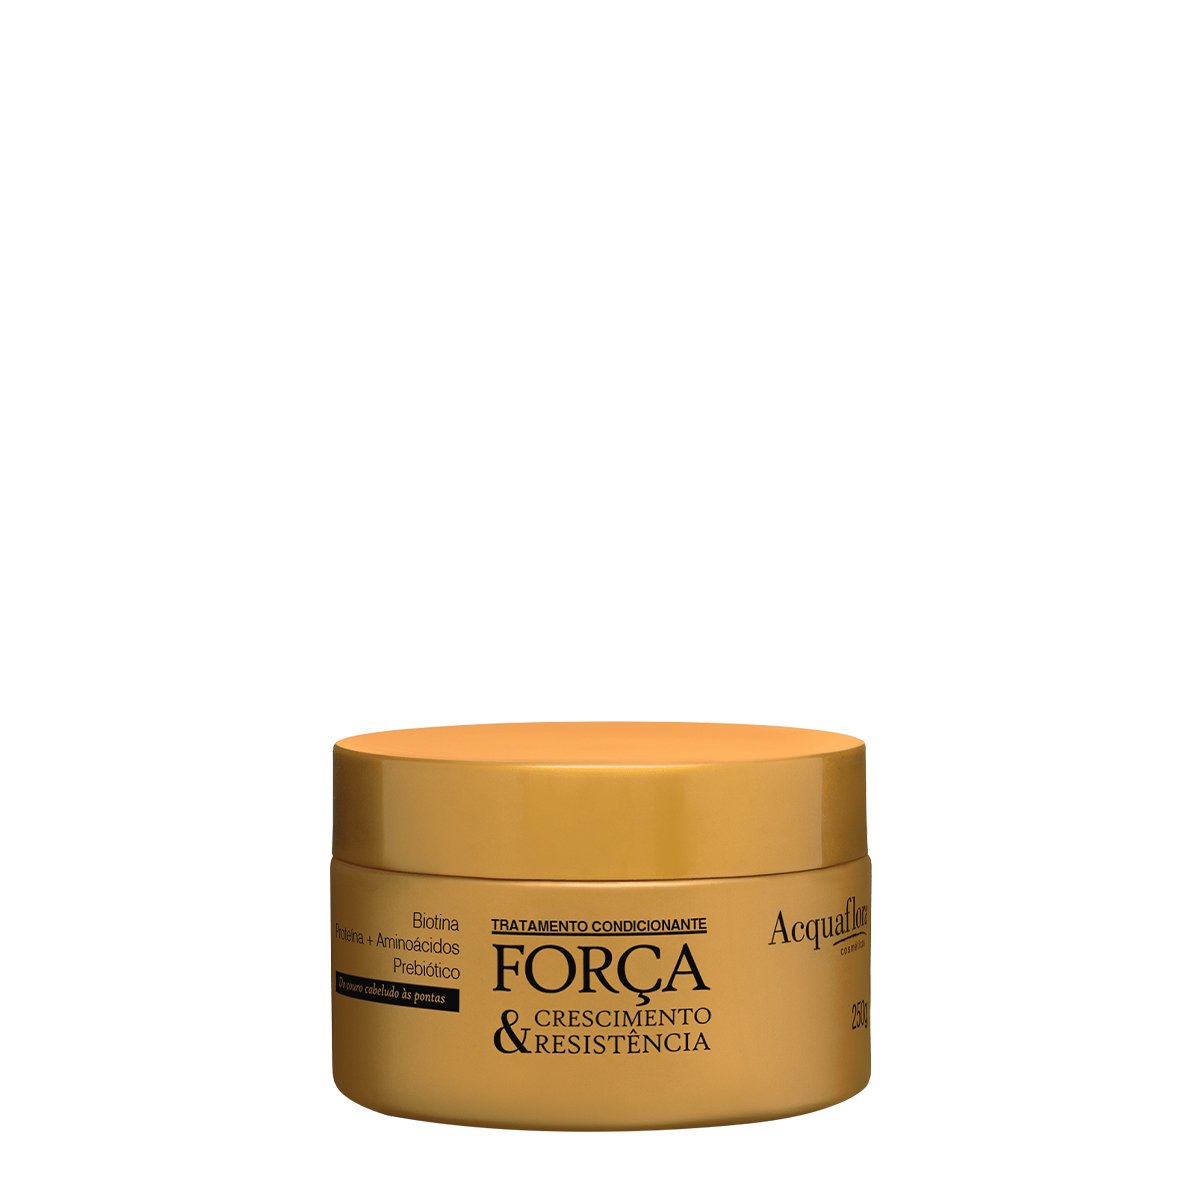 Acquaflora Forca, Crescimento & Resistencia - Mascara Capilar 250g 250g 1